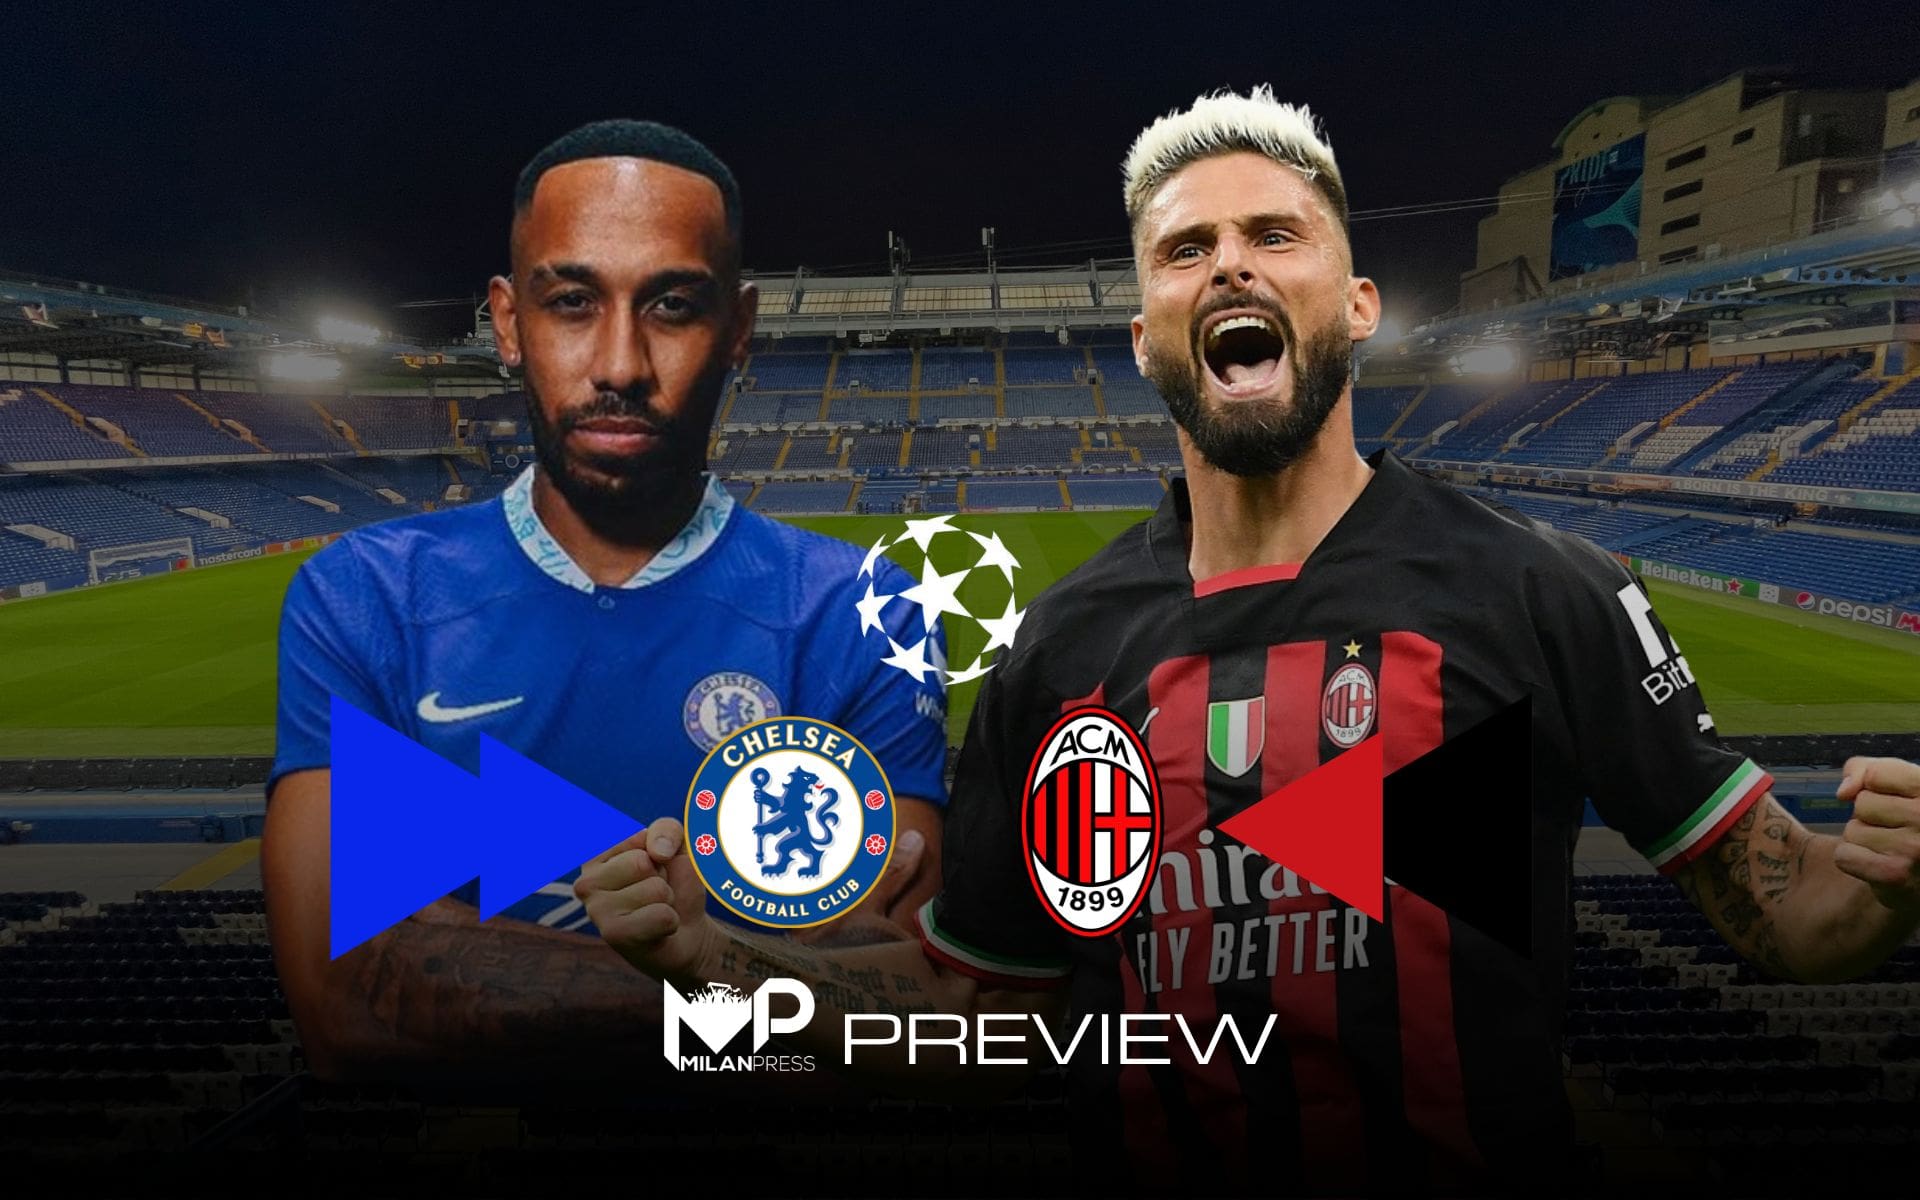 Chelsea-Milan Preview - MilanPress, robe dell'altro diavolo 